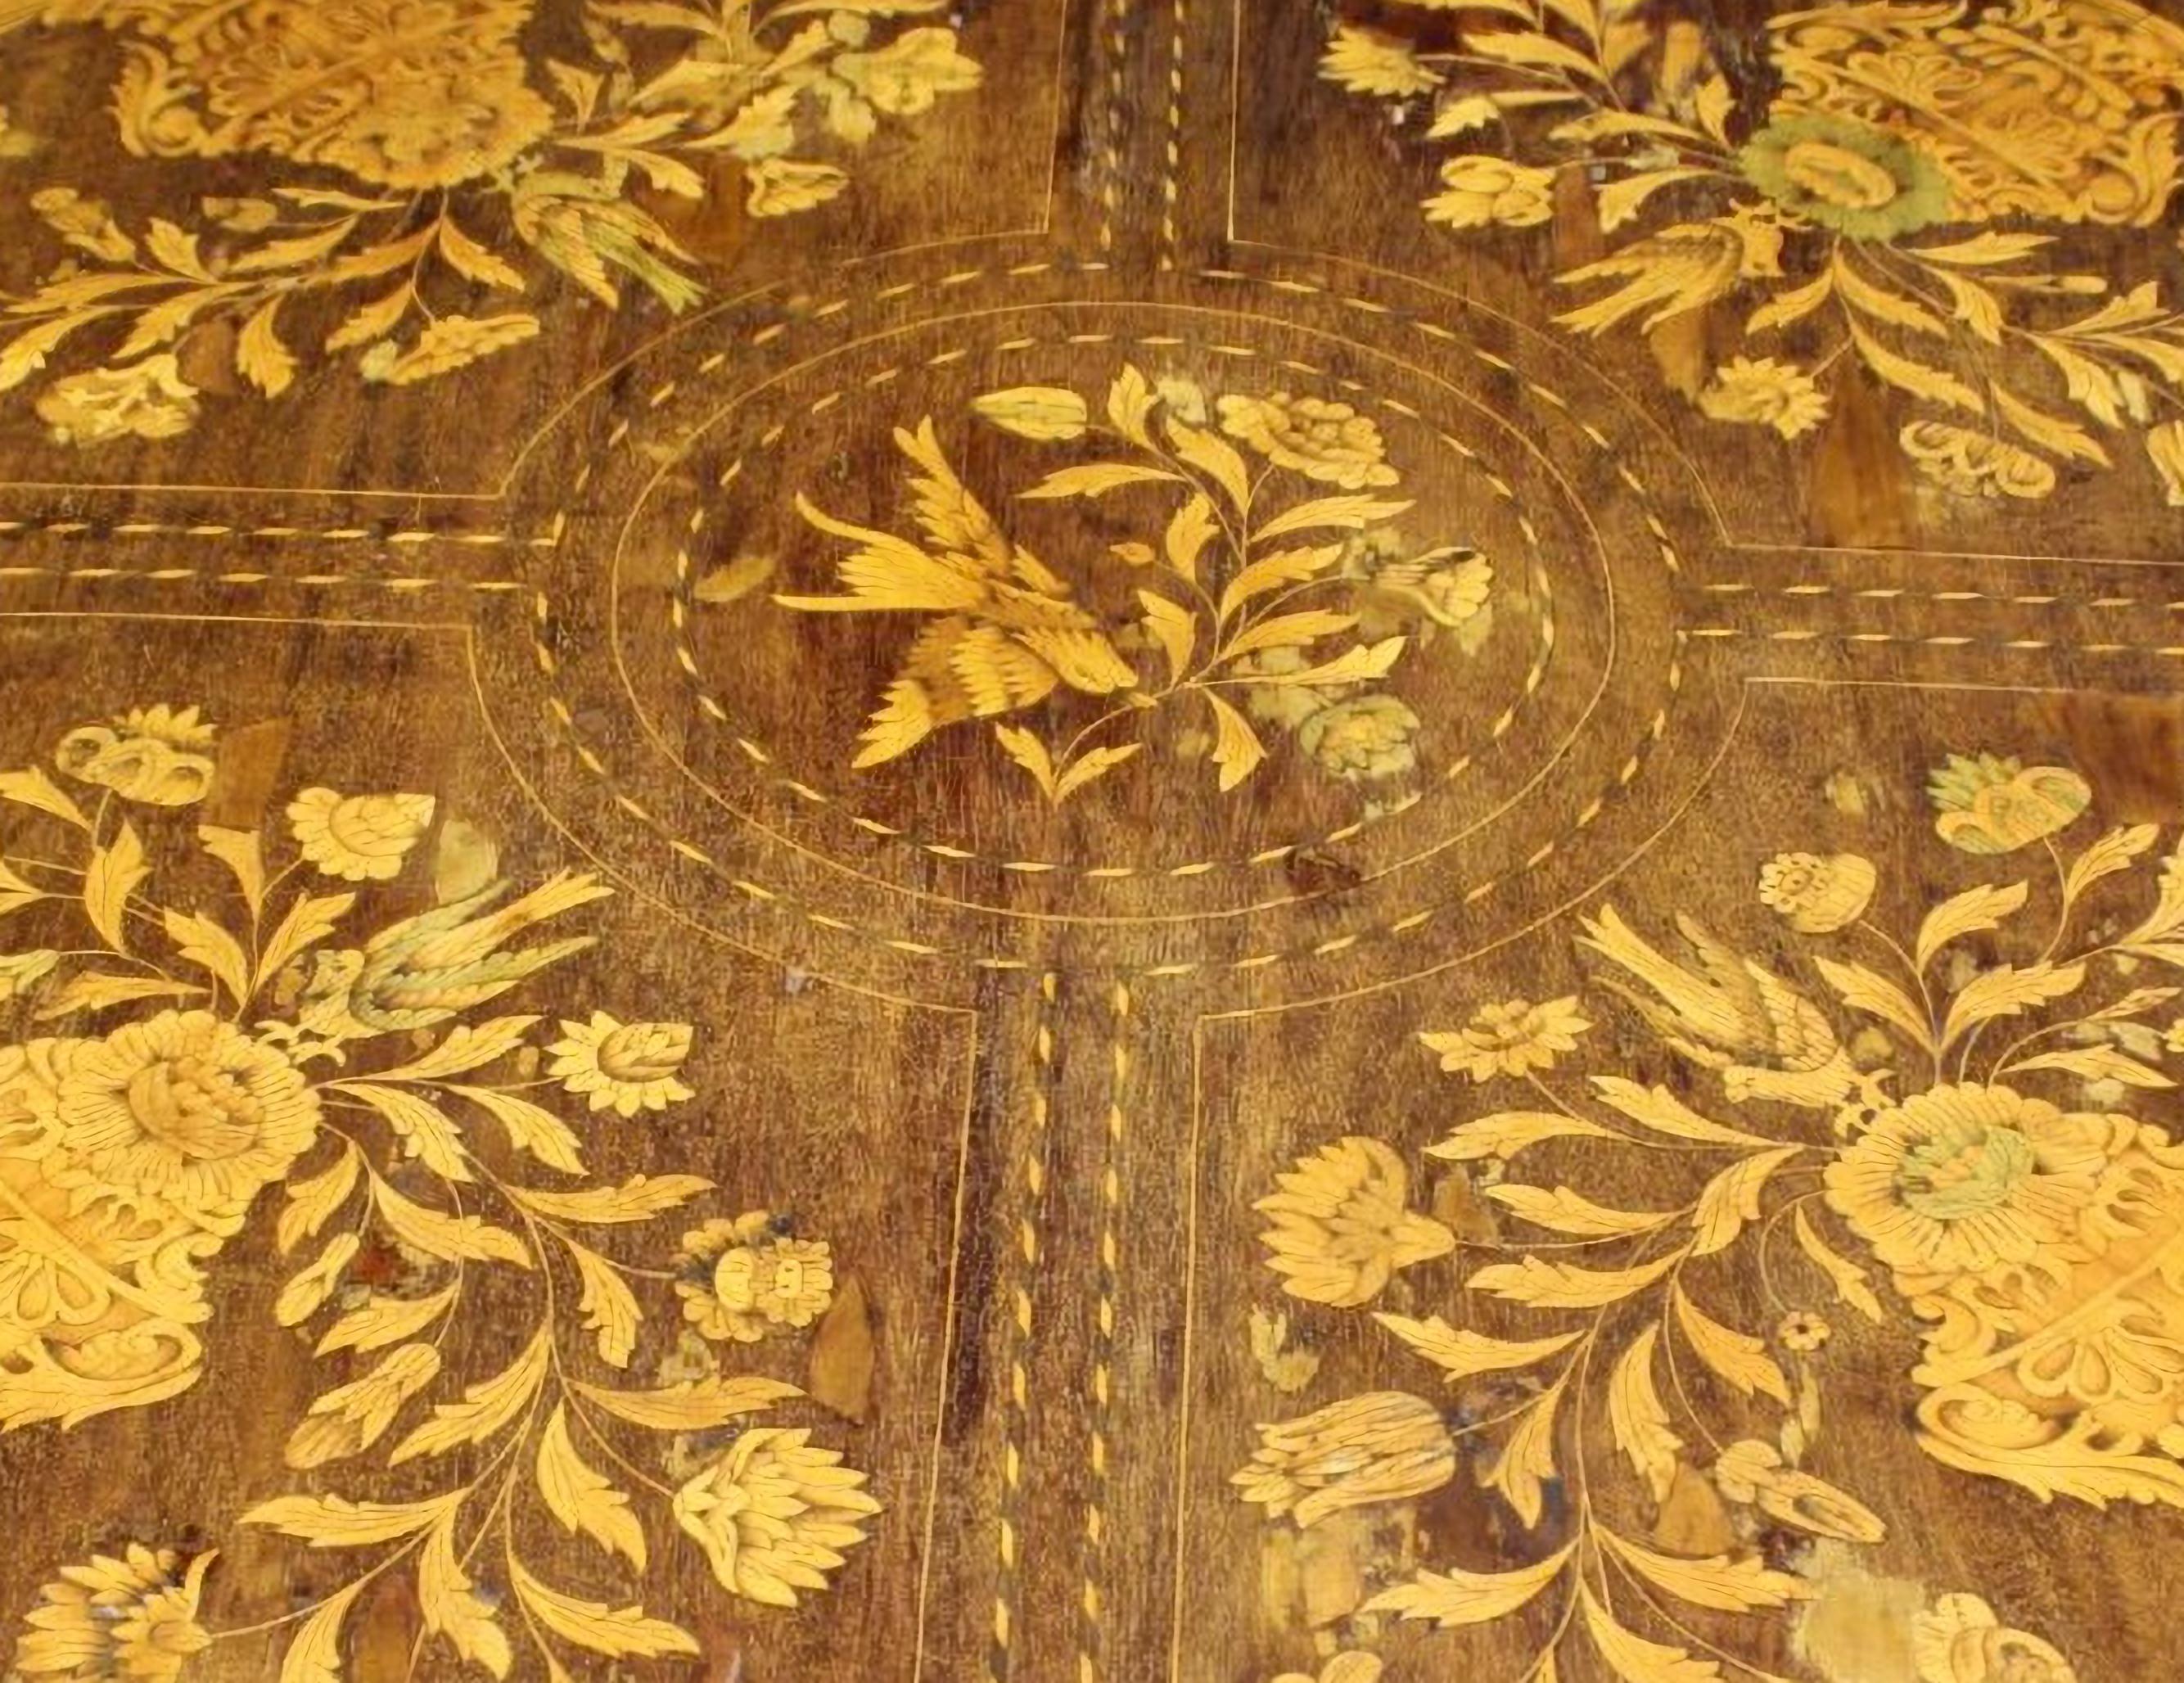 IMPORTANTE TABLE CENTRALE Hollande fin 18ème siècle
en bois d'acajou et incrusté de diverses essences de bois avec des motifs de flore et de faune hollandaises 
h 75 x 116 cm
bon état d'origine